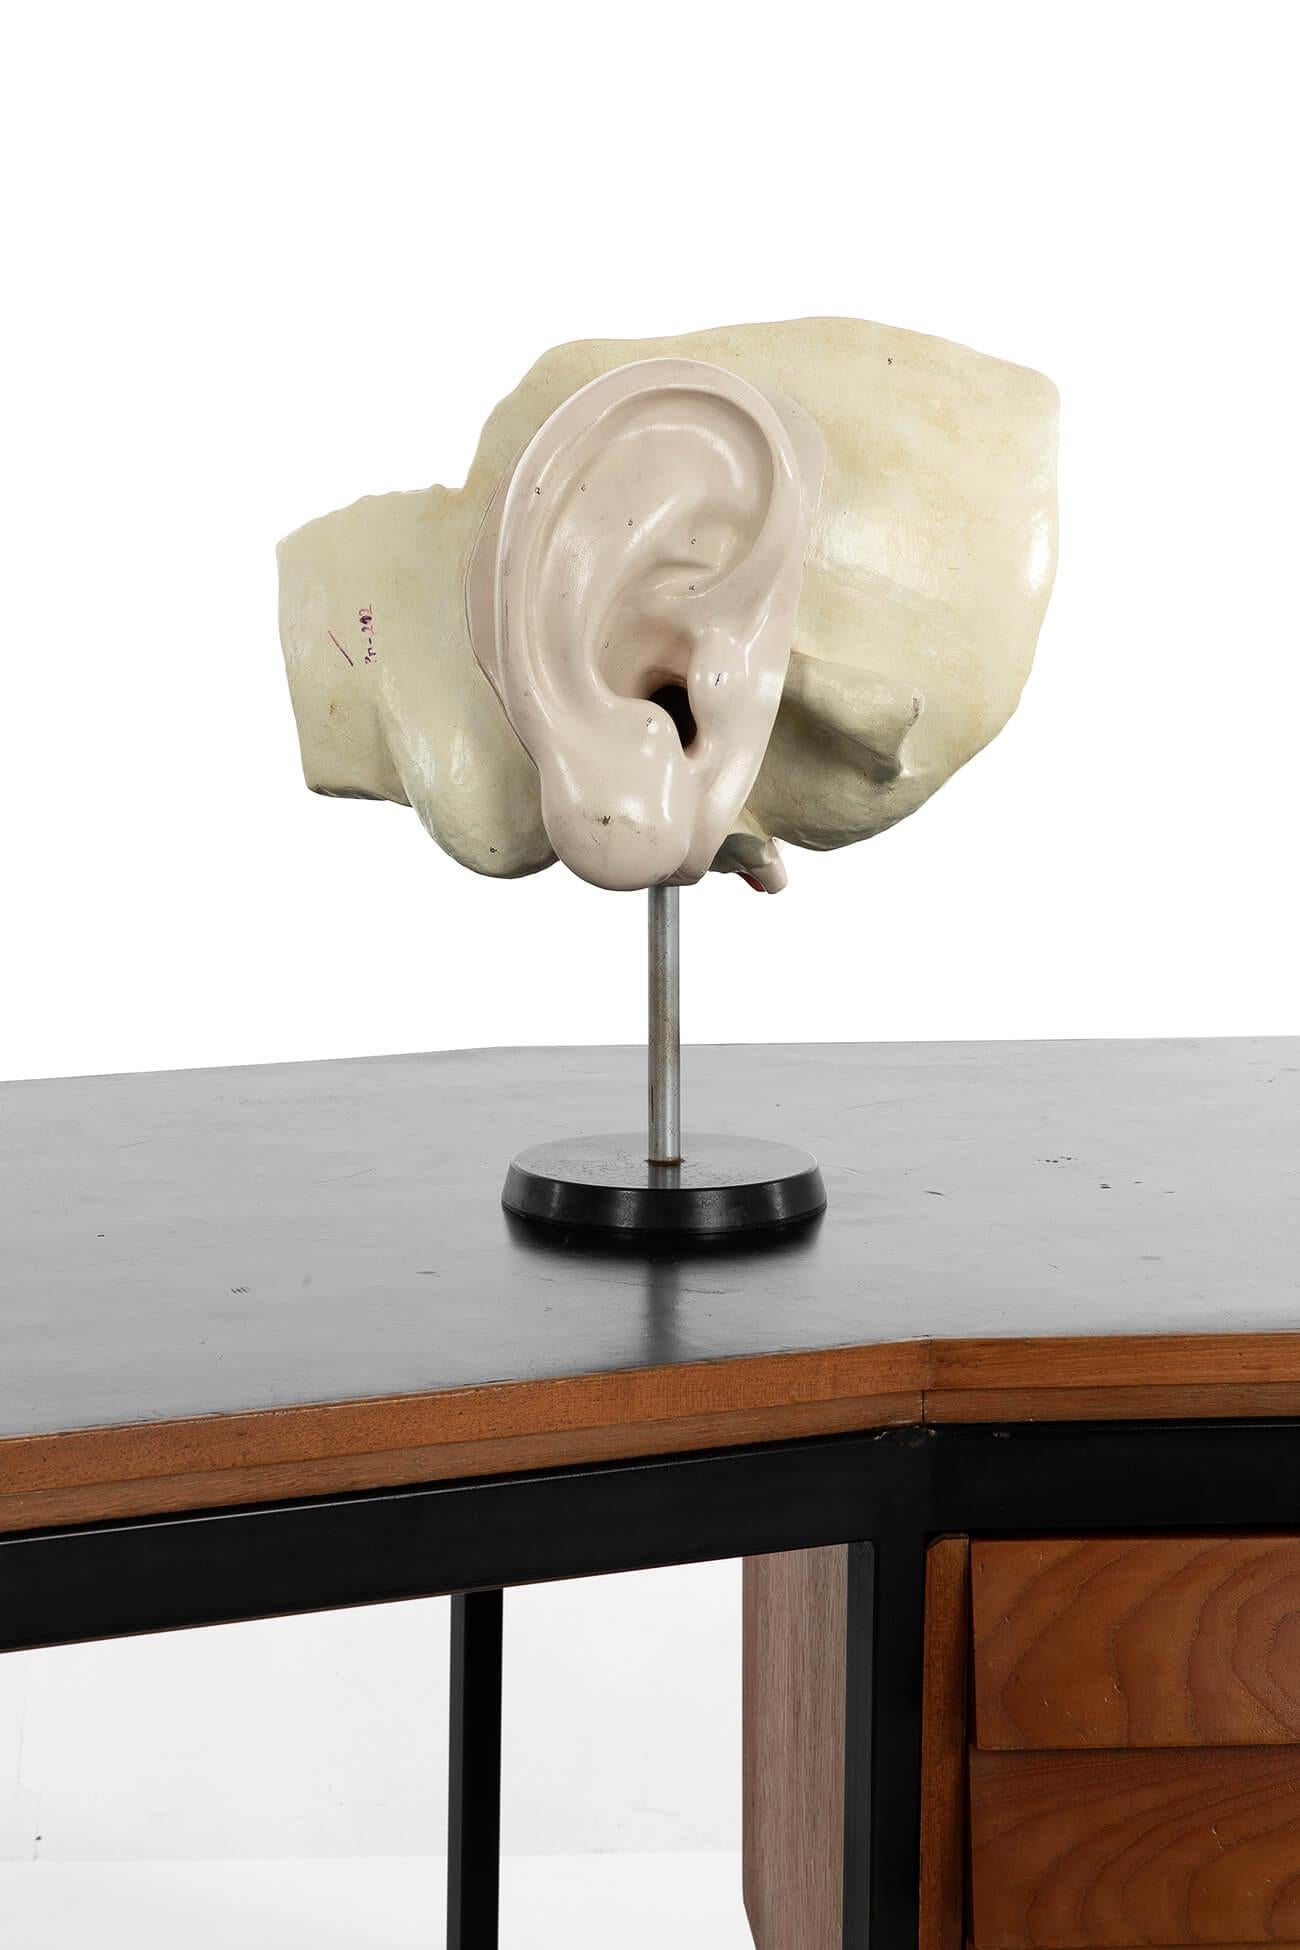 Un rare modèle en plâtre de l'oreille humaine posé sur un support en bois.

Le modèle est fabriqué par le célèbre fabricant allemand SOMSO.

Ce modèle particulier est rare car il montre de manière incroyablement détaillée le tympan amovible, le